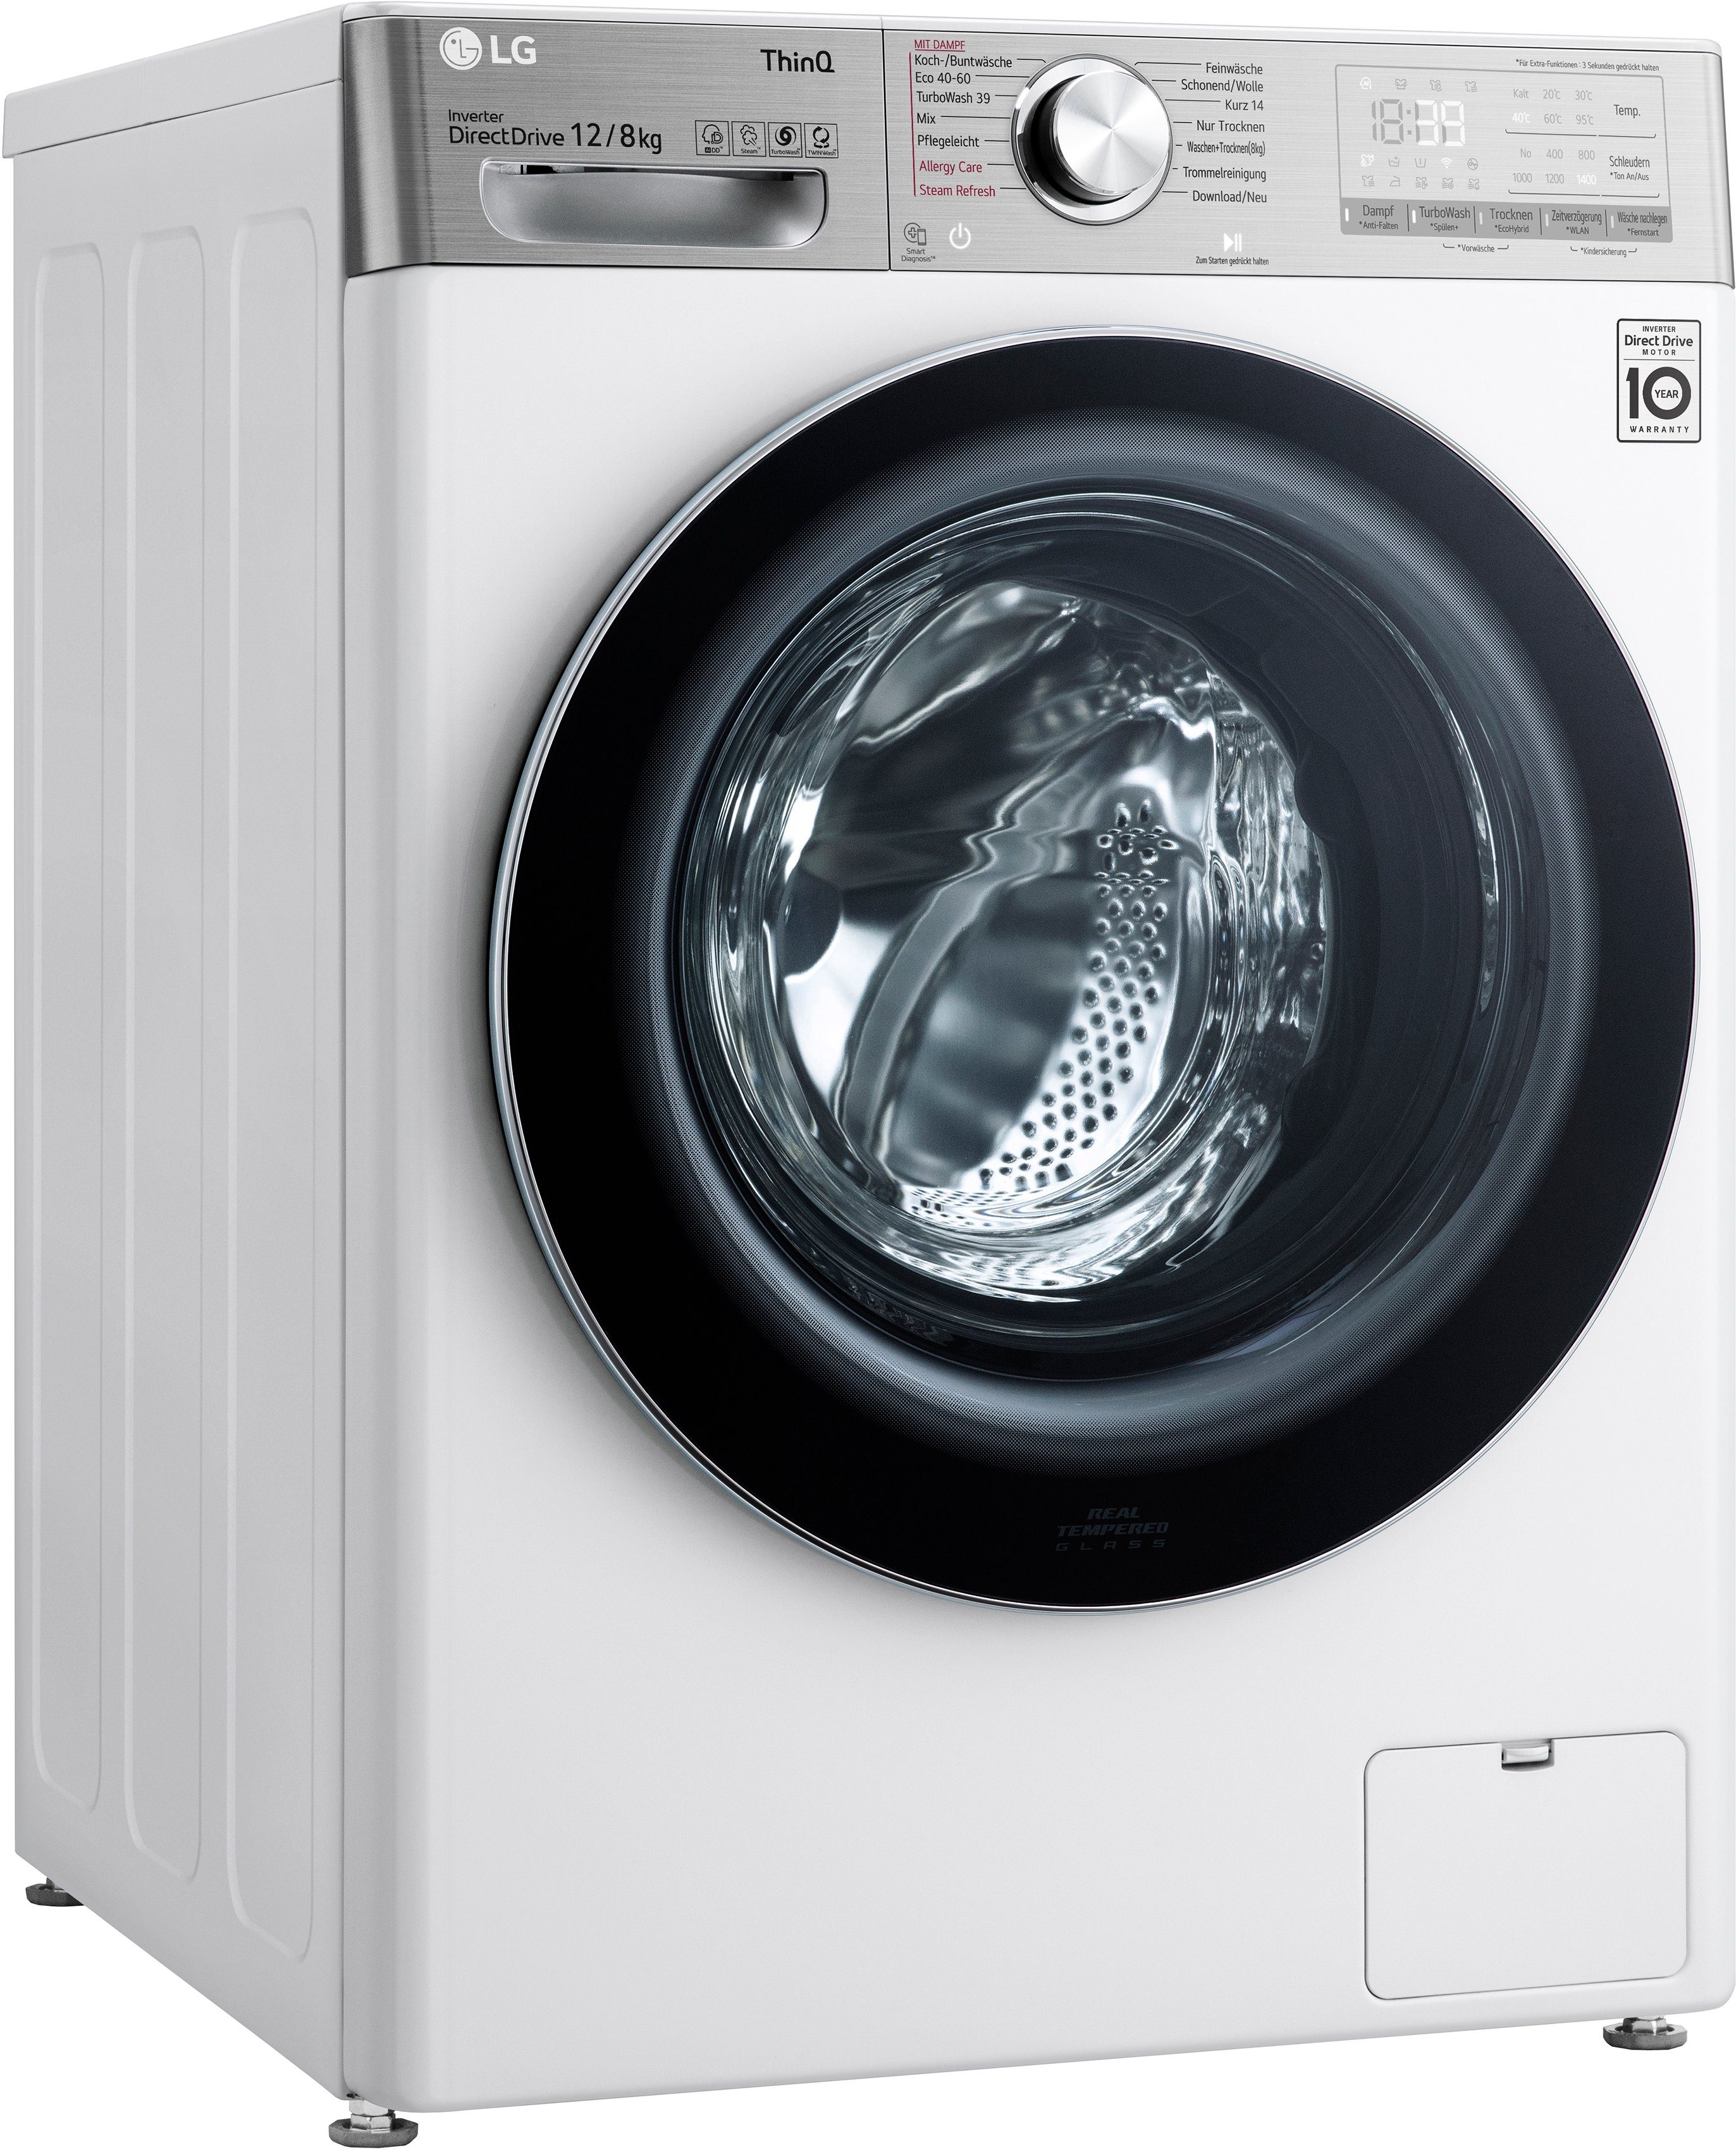 LG Waschtrockner V9WD128H2, 12 U/min, 1400 in Minuten kg, kg, 8 - 39 Waschen nur TurboWash®